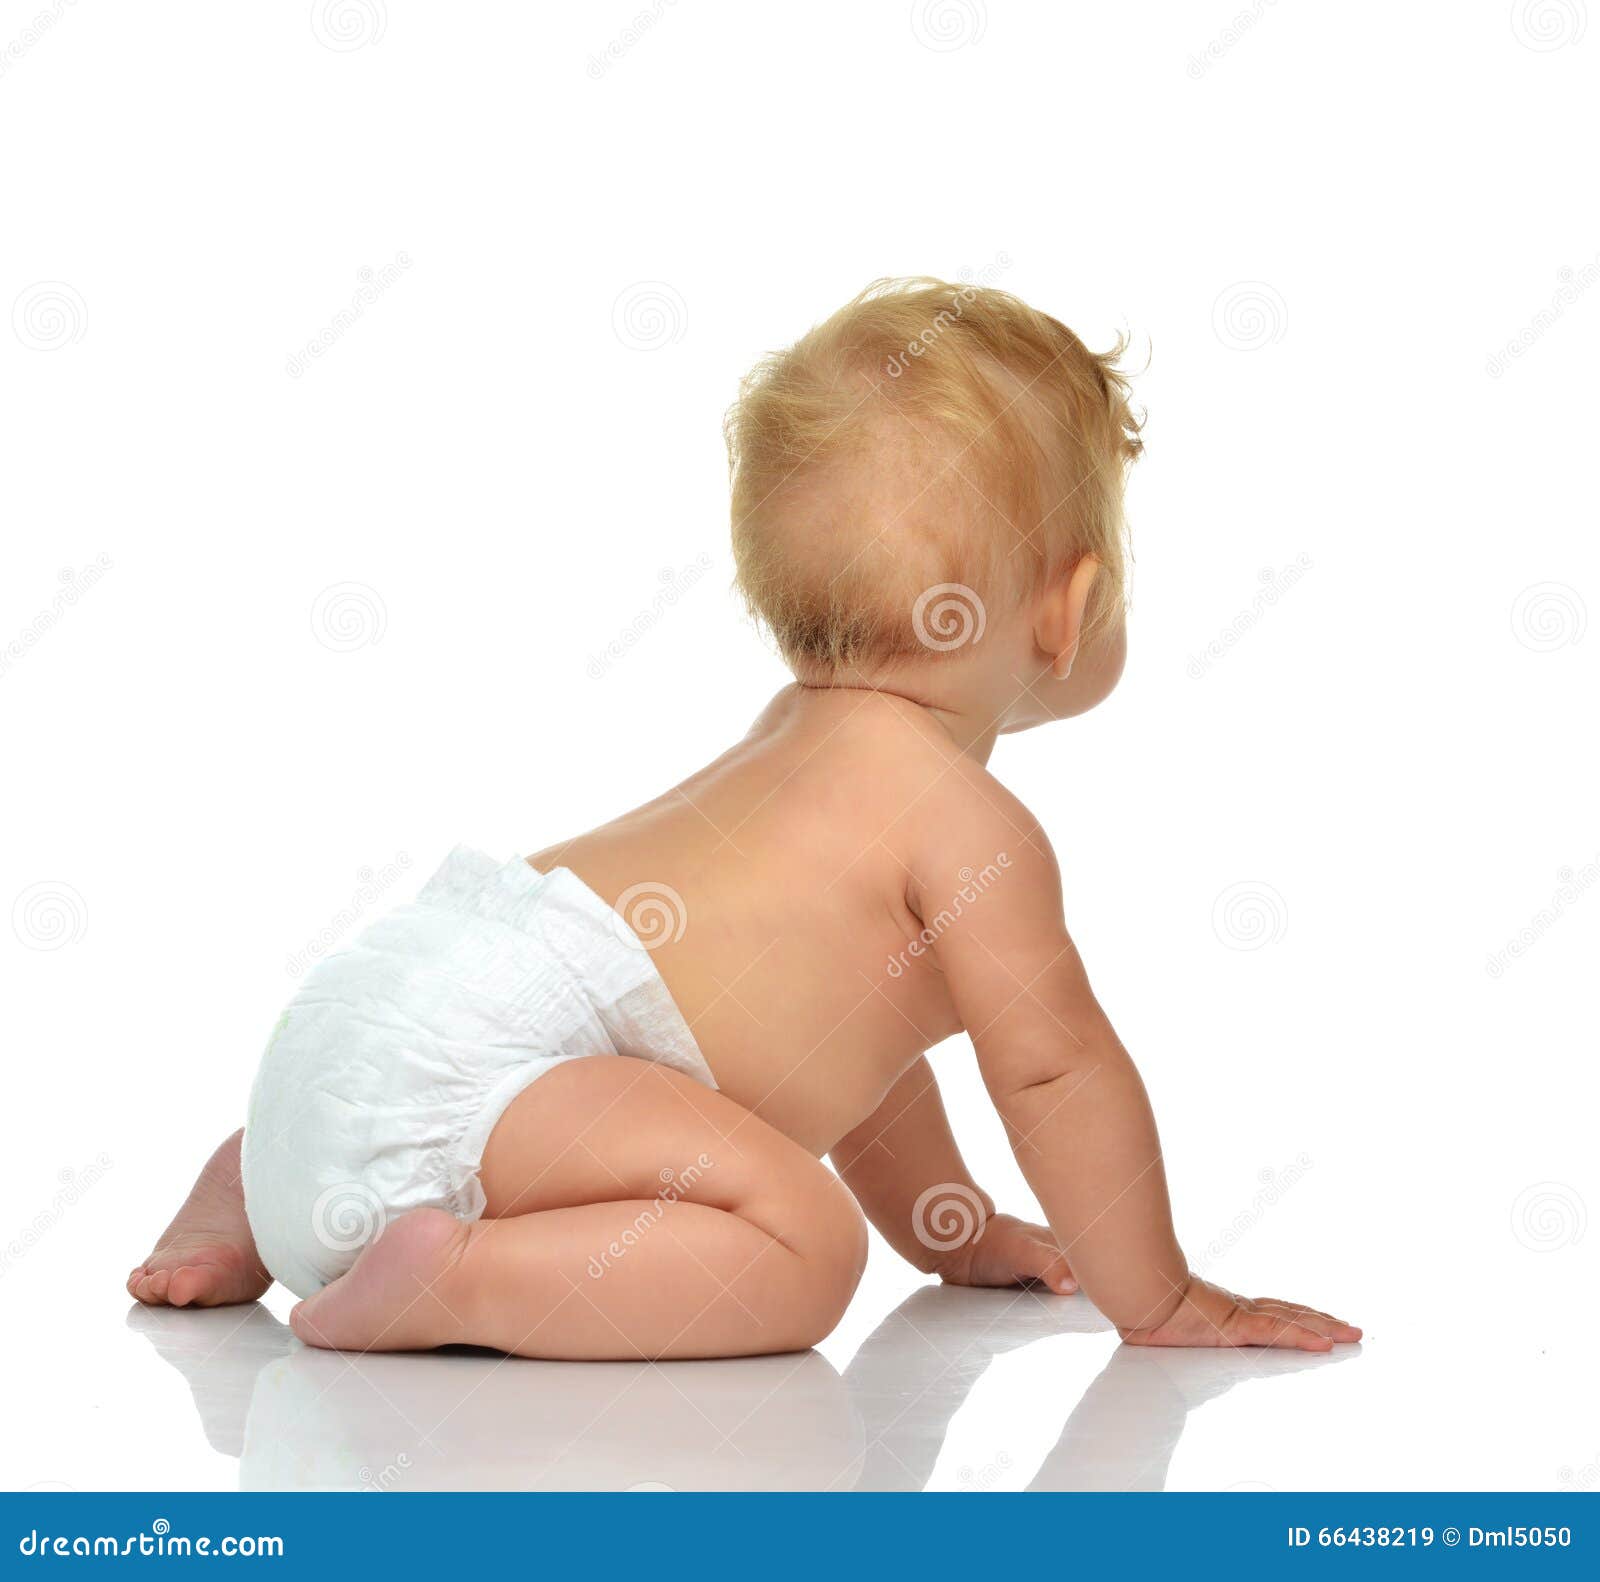 Infant Child Baby Toddler Sitting Crawling Backwards Stock ...